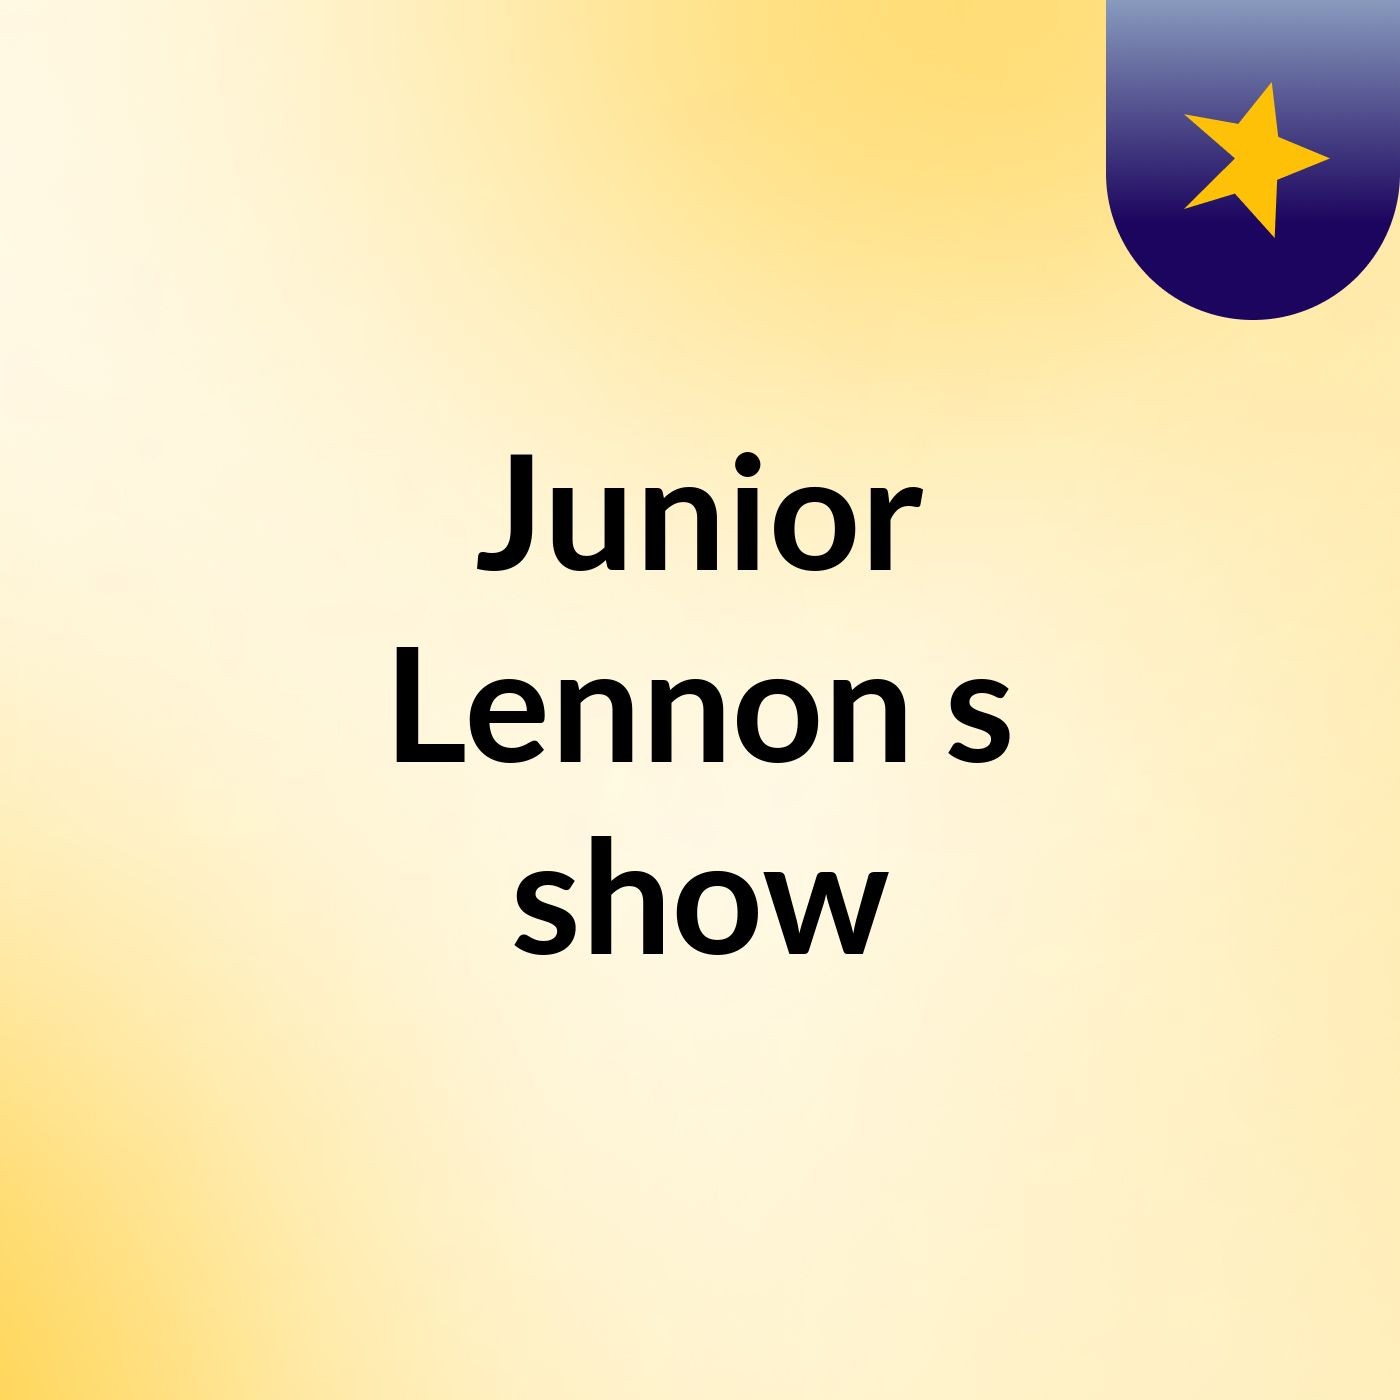 Junior Lennon's show